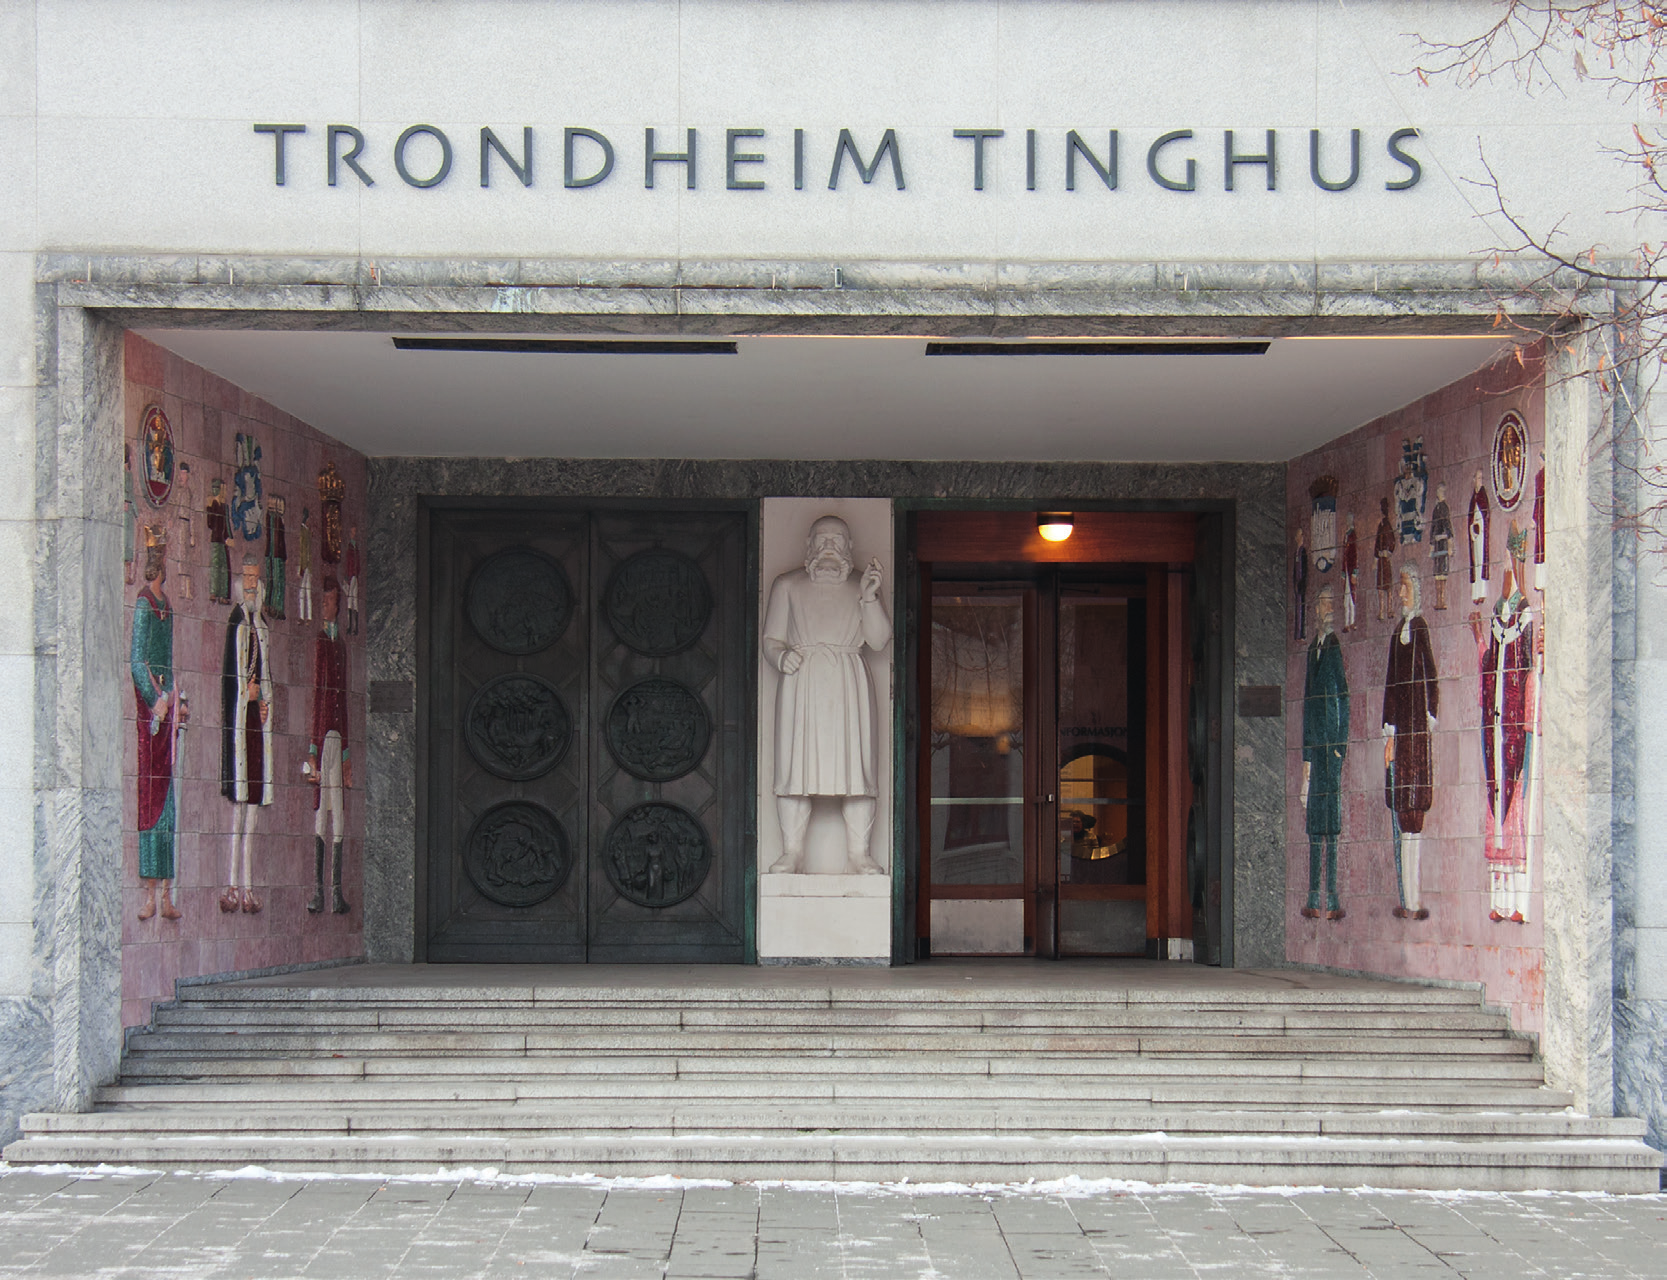 Inngangspartiet til Trondheim tinghus fra Munkegata har to dobbeltdører med i alt 12 relieffer med motiver fra samfunnet som domstolene har sitt virke i, trøndersk næringsliv, kirkeliv,